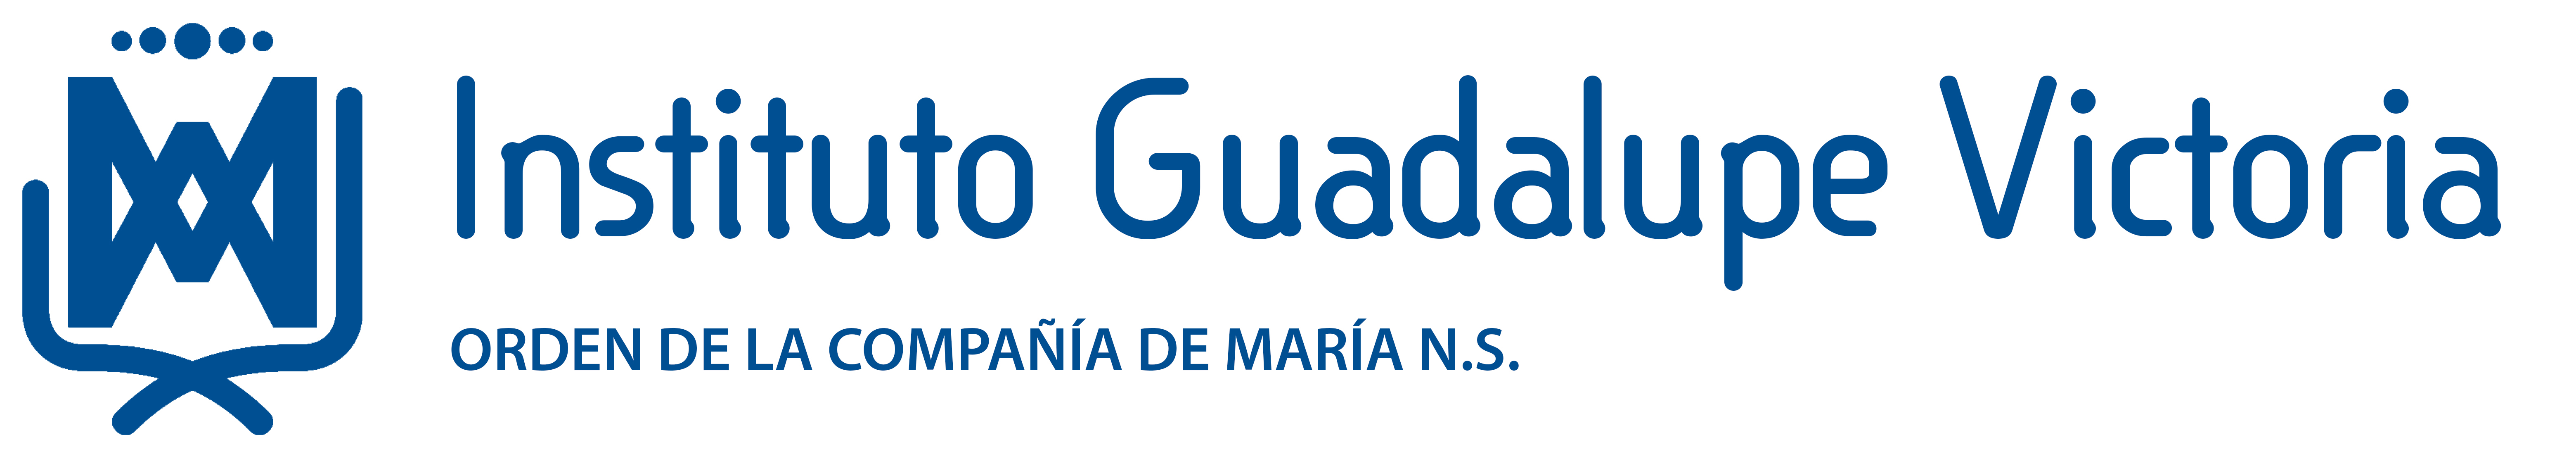 Instituto Guadalupe Victoria